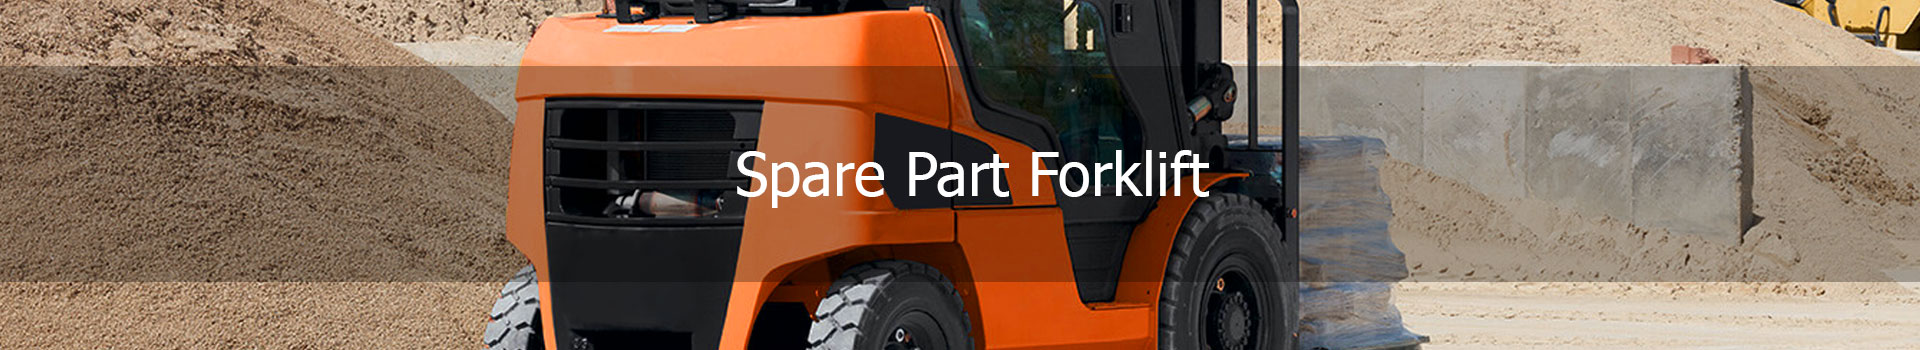 Spare Part Forklift